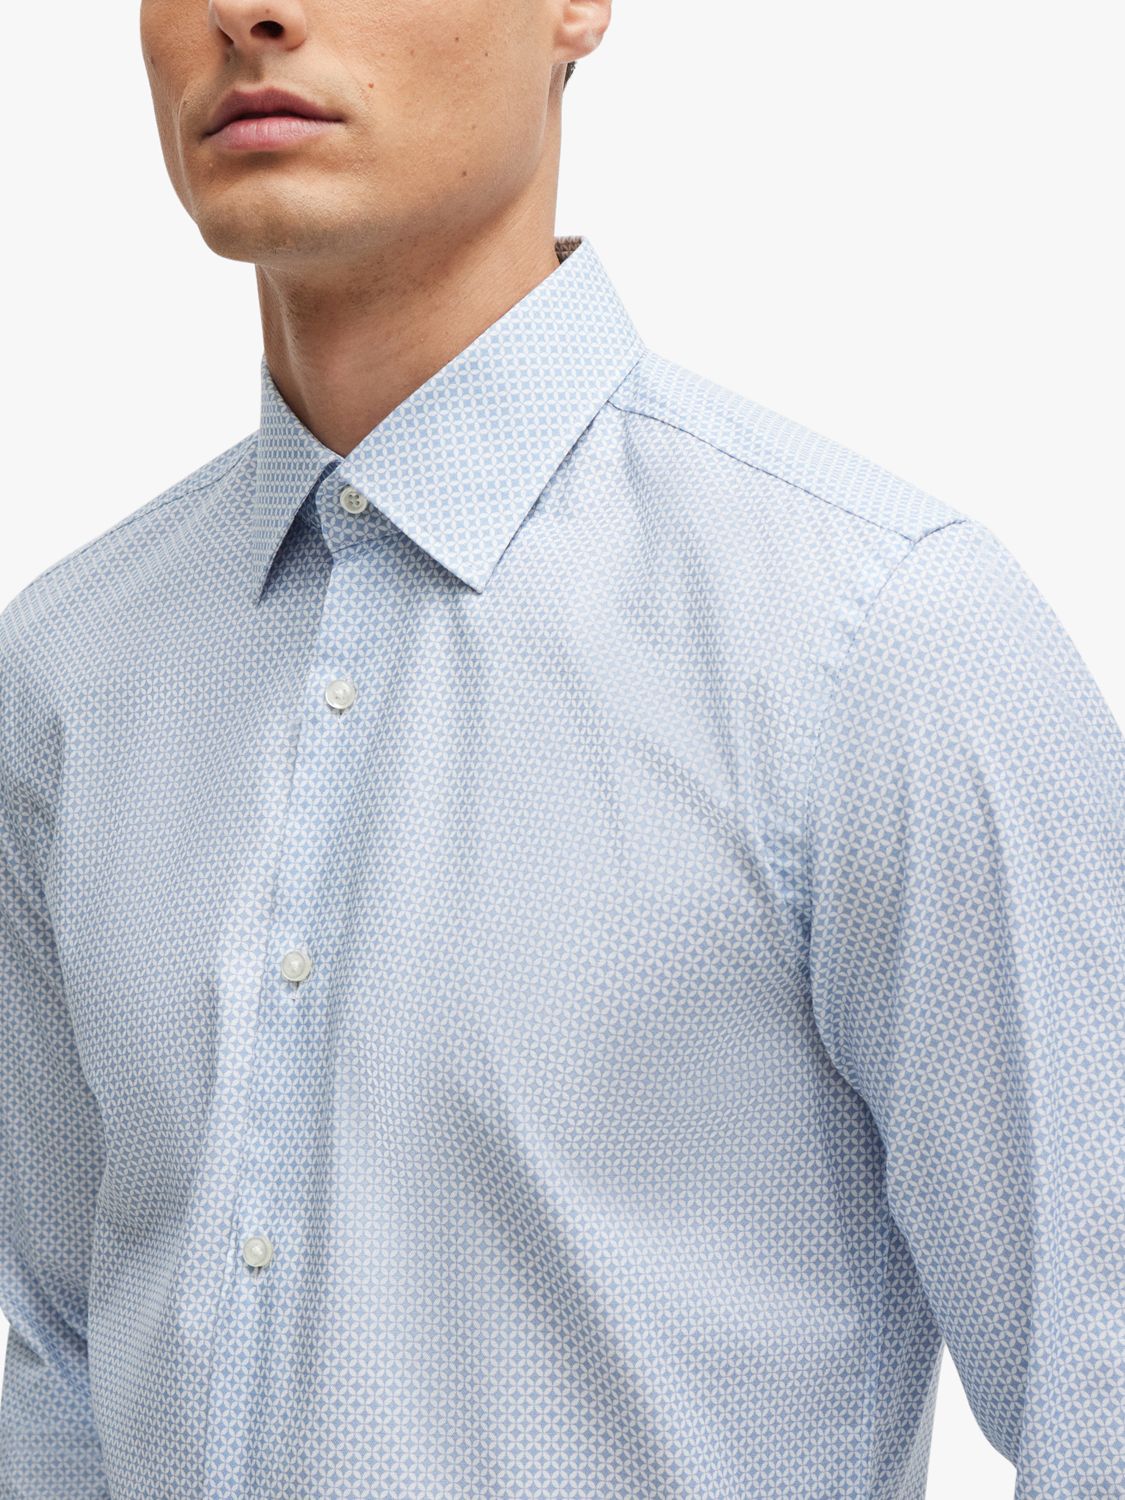 BOSS H-Hank Kent Long Sleeve Shirt, Light/Pastel Blue, 17.75L